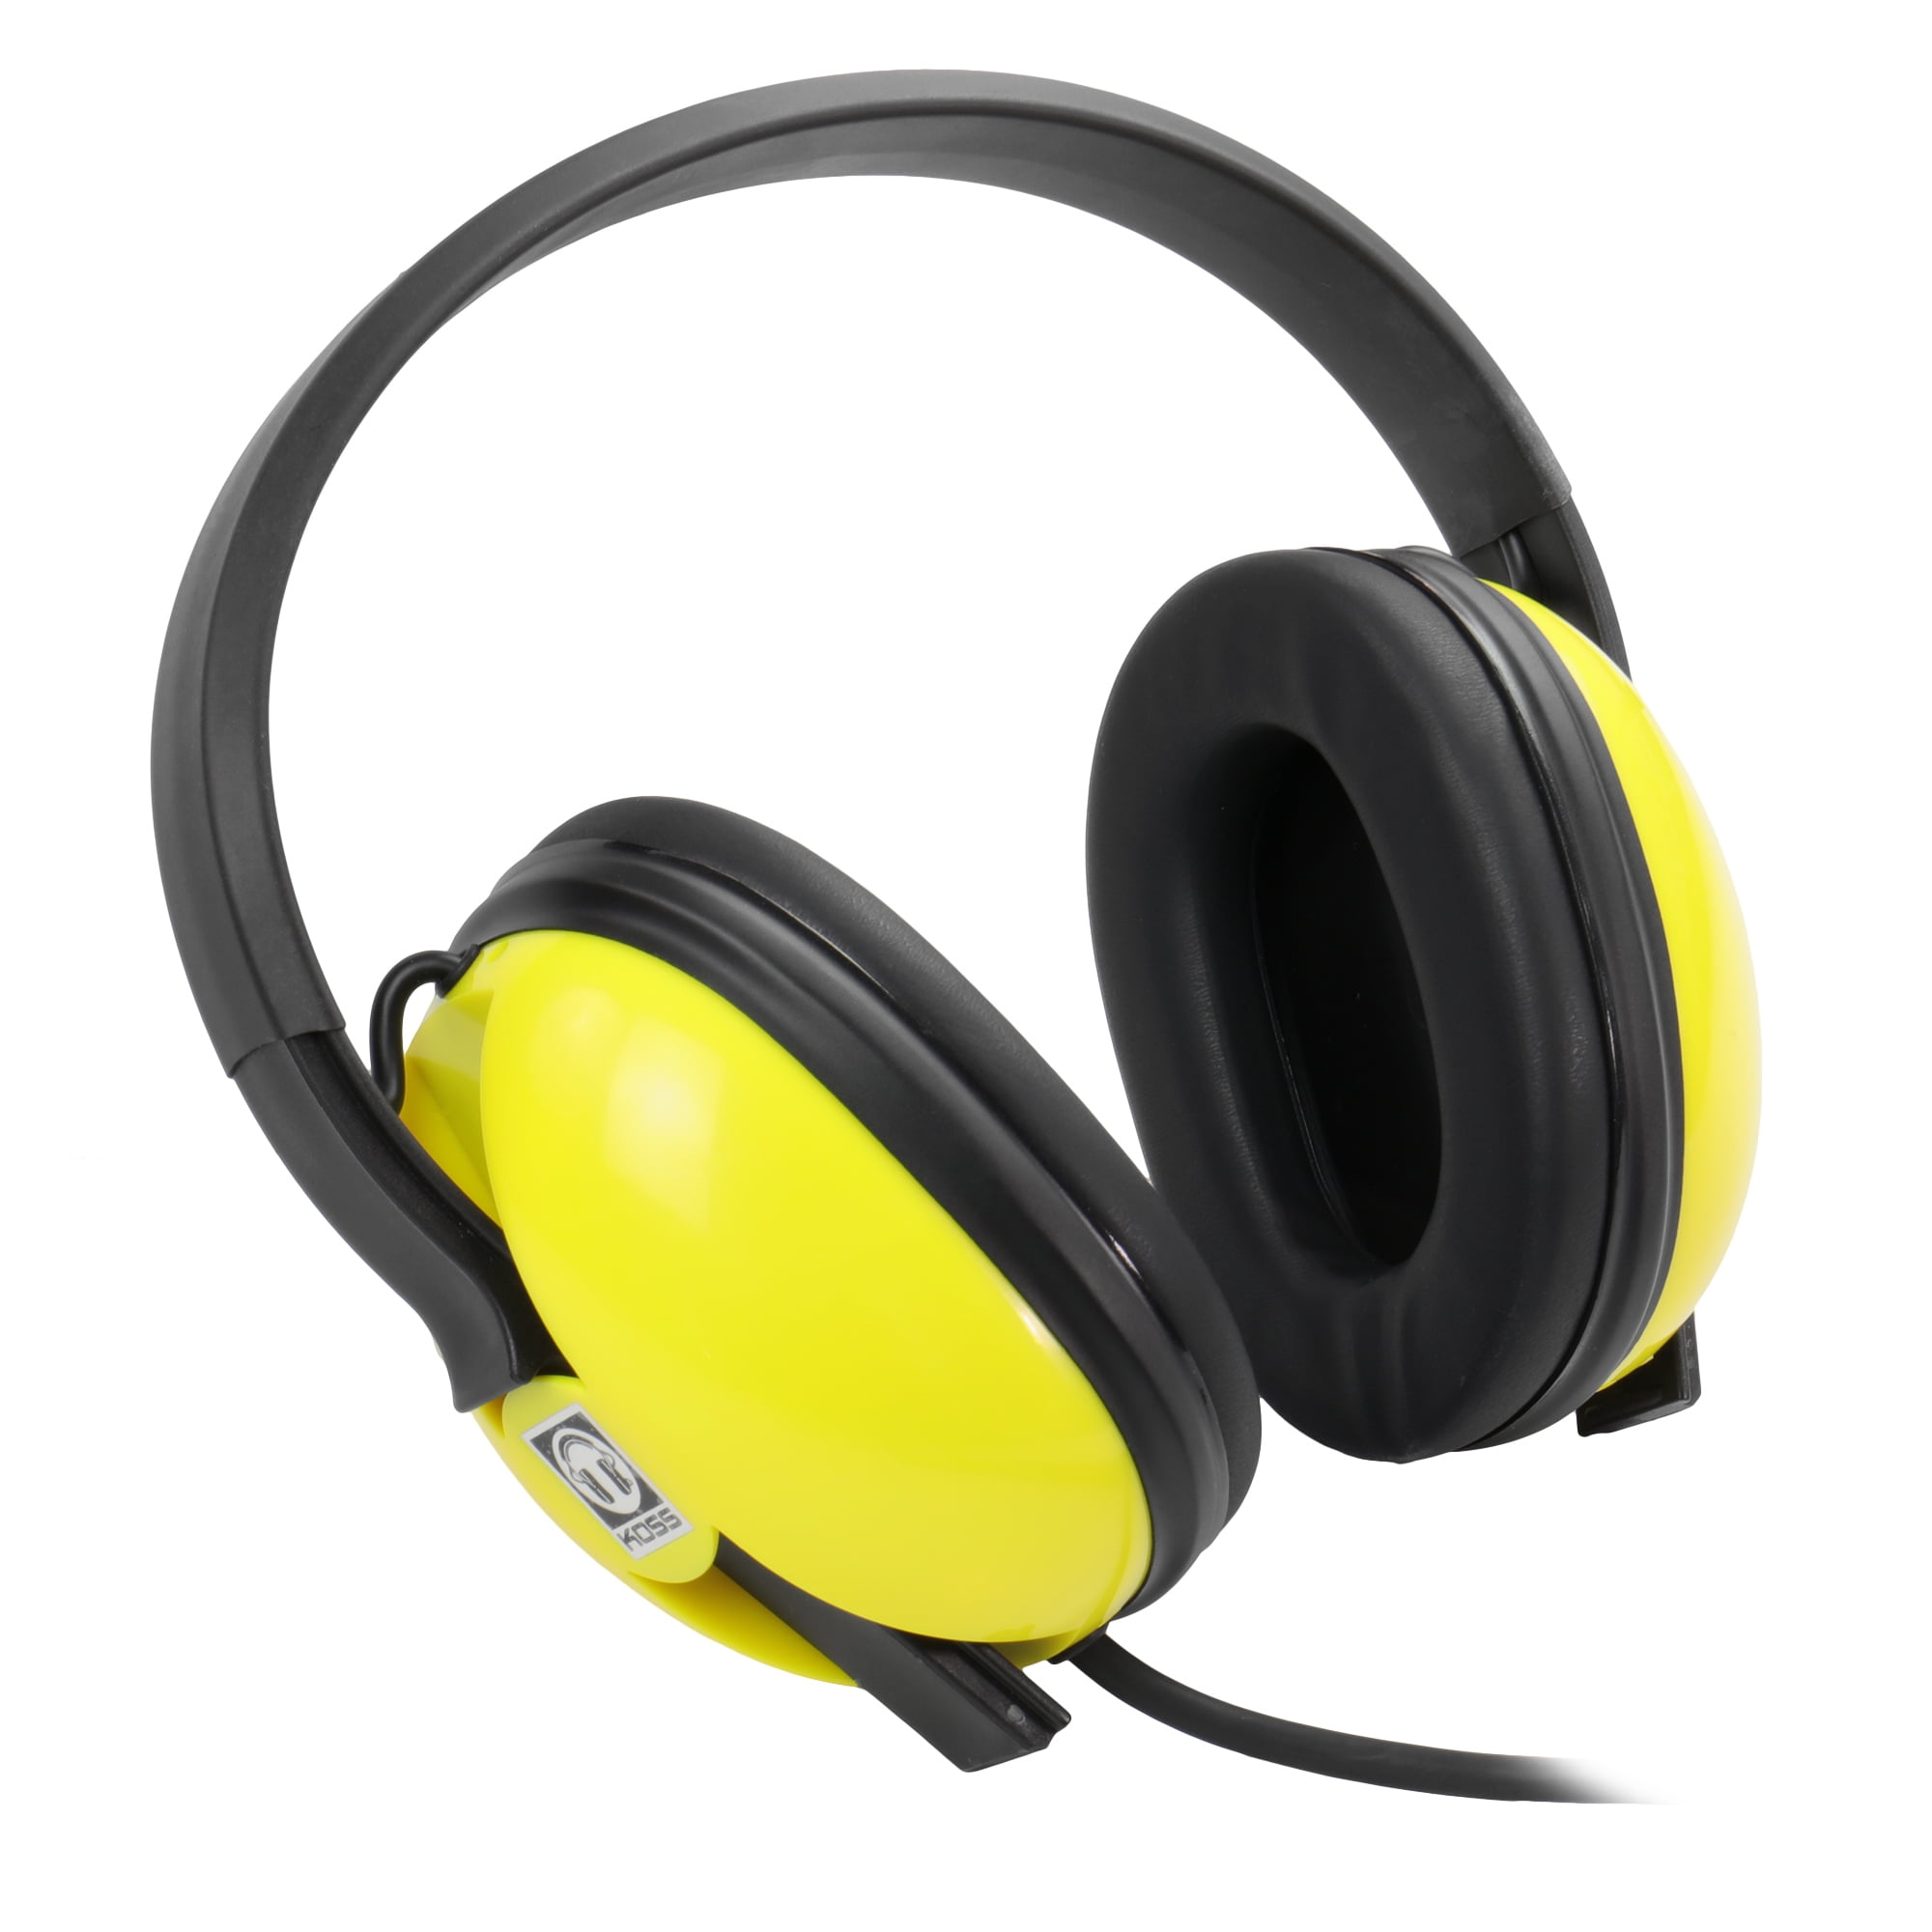 Patriot Waterproof Headphones for Minelab Equinox Series 600 or 800 